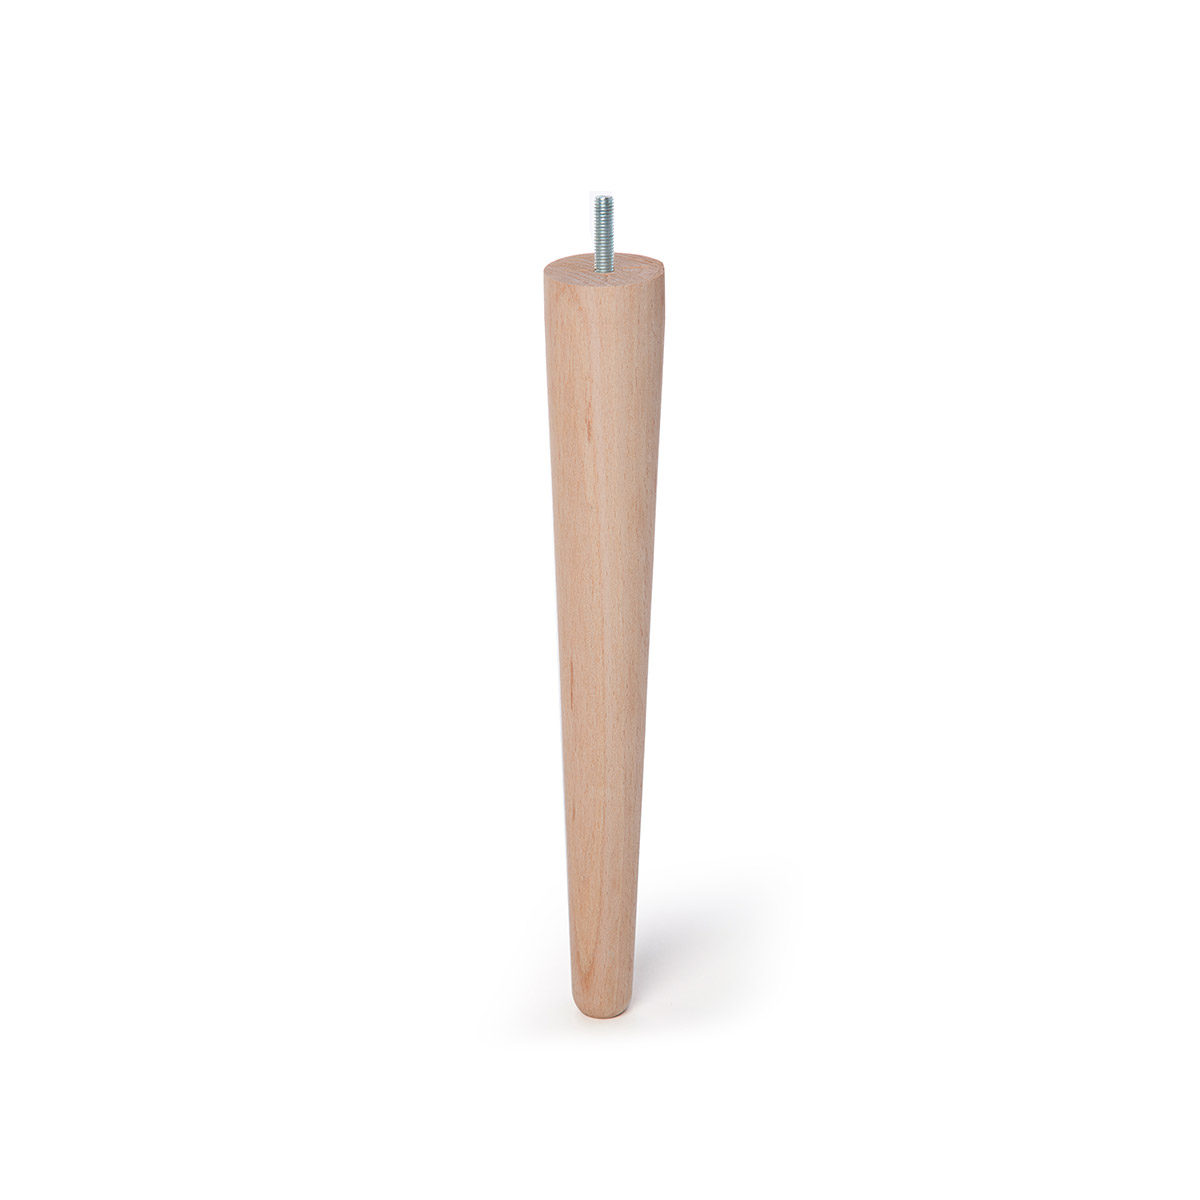 Pied conique en bois d'une hauteur de 330 mm et finition hêtre brut. Dimensions: 48x48x330 mm